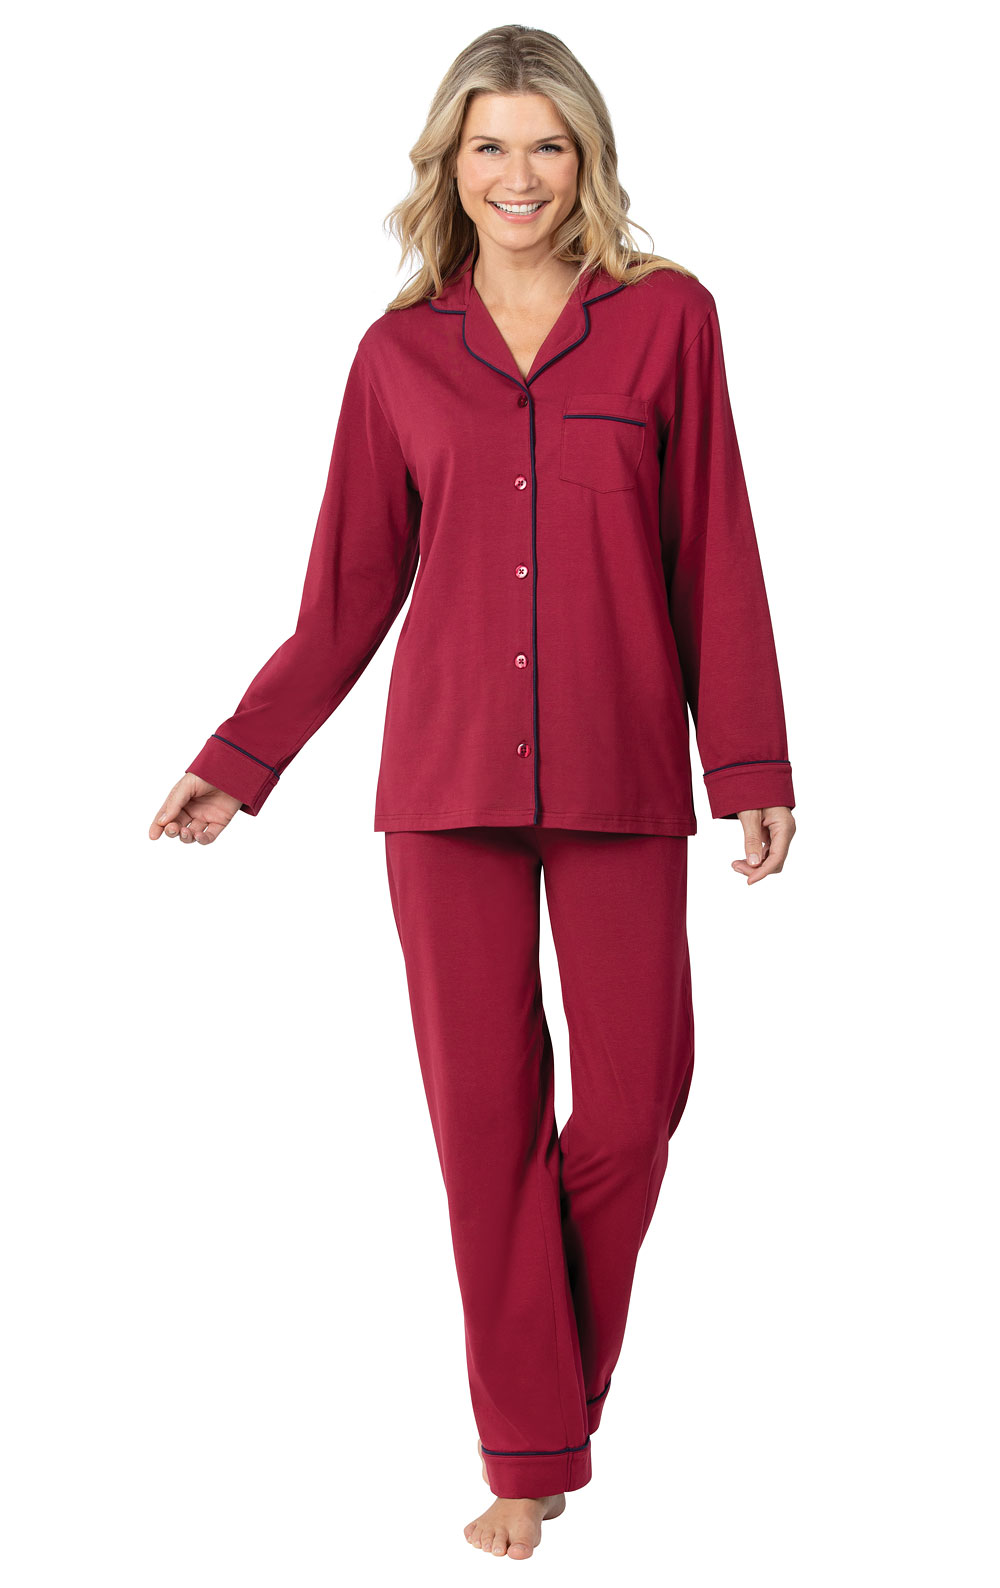 Solid Jersey Boyfriend Pajamas in Cotton Pajamas for Women | Pajamas ...